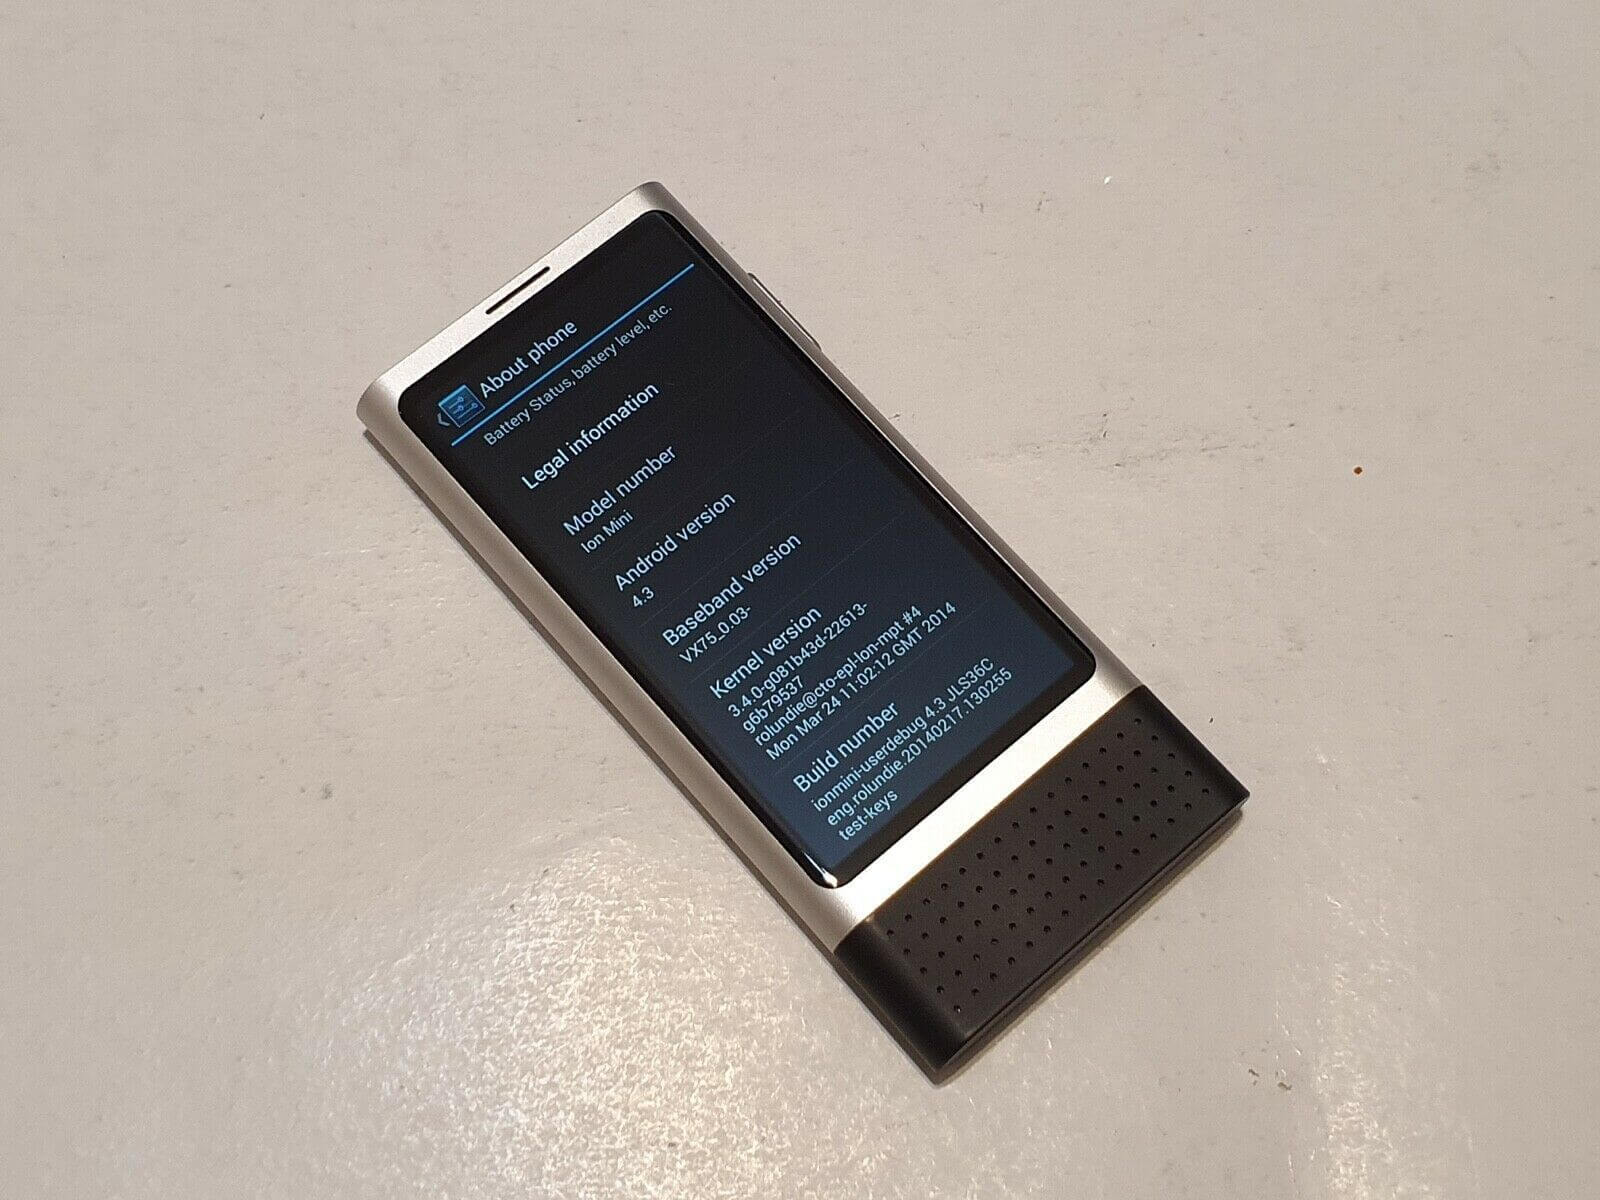 Nokia Ion Mini